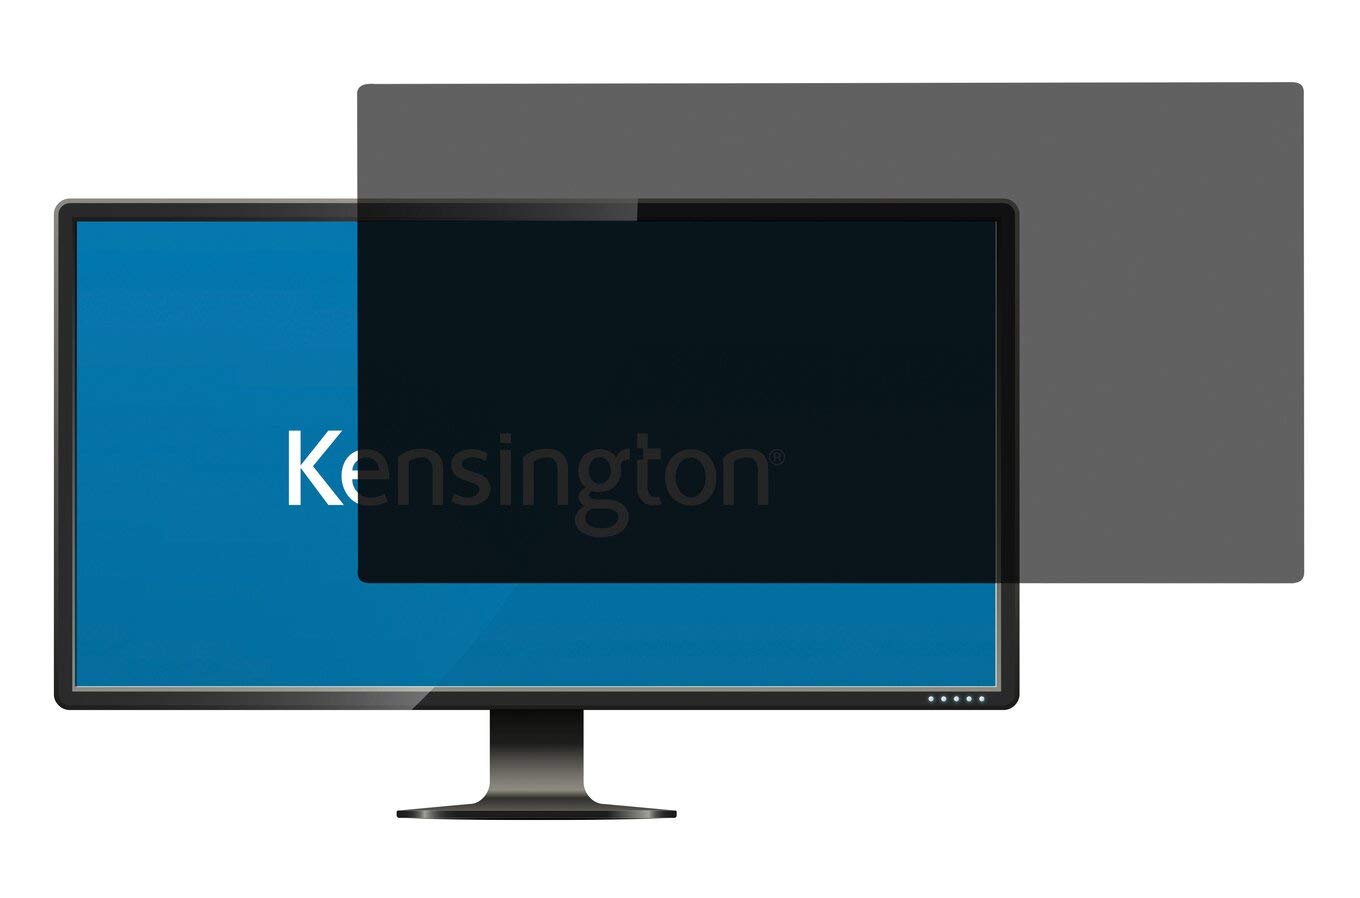 Kensington Blickschutzfilter für Monitore 18,5 Zoll, 16:9, Geeignet für LG, ViewSonic, Samsung, DSGVO-konform, Für mehr Datensicherheit, Mit Blaulichtfilter und Blendschutz, 626475